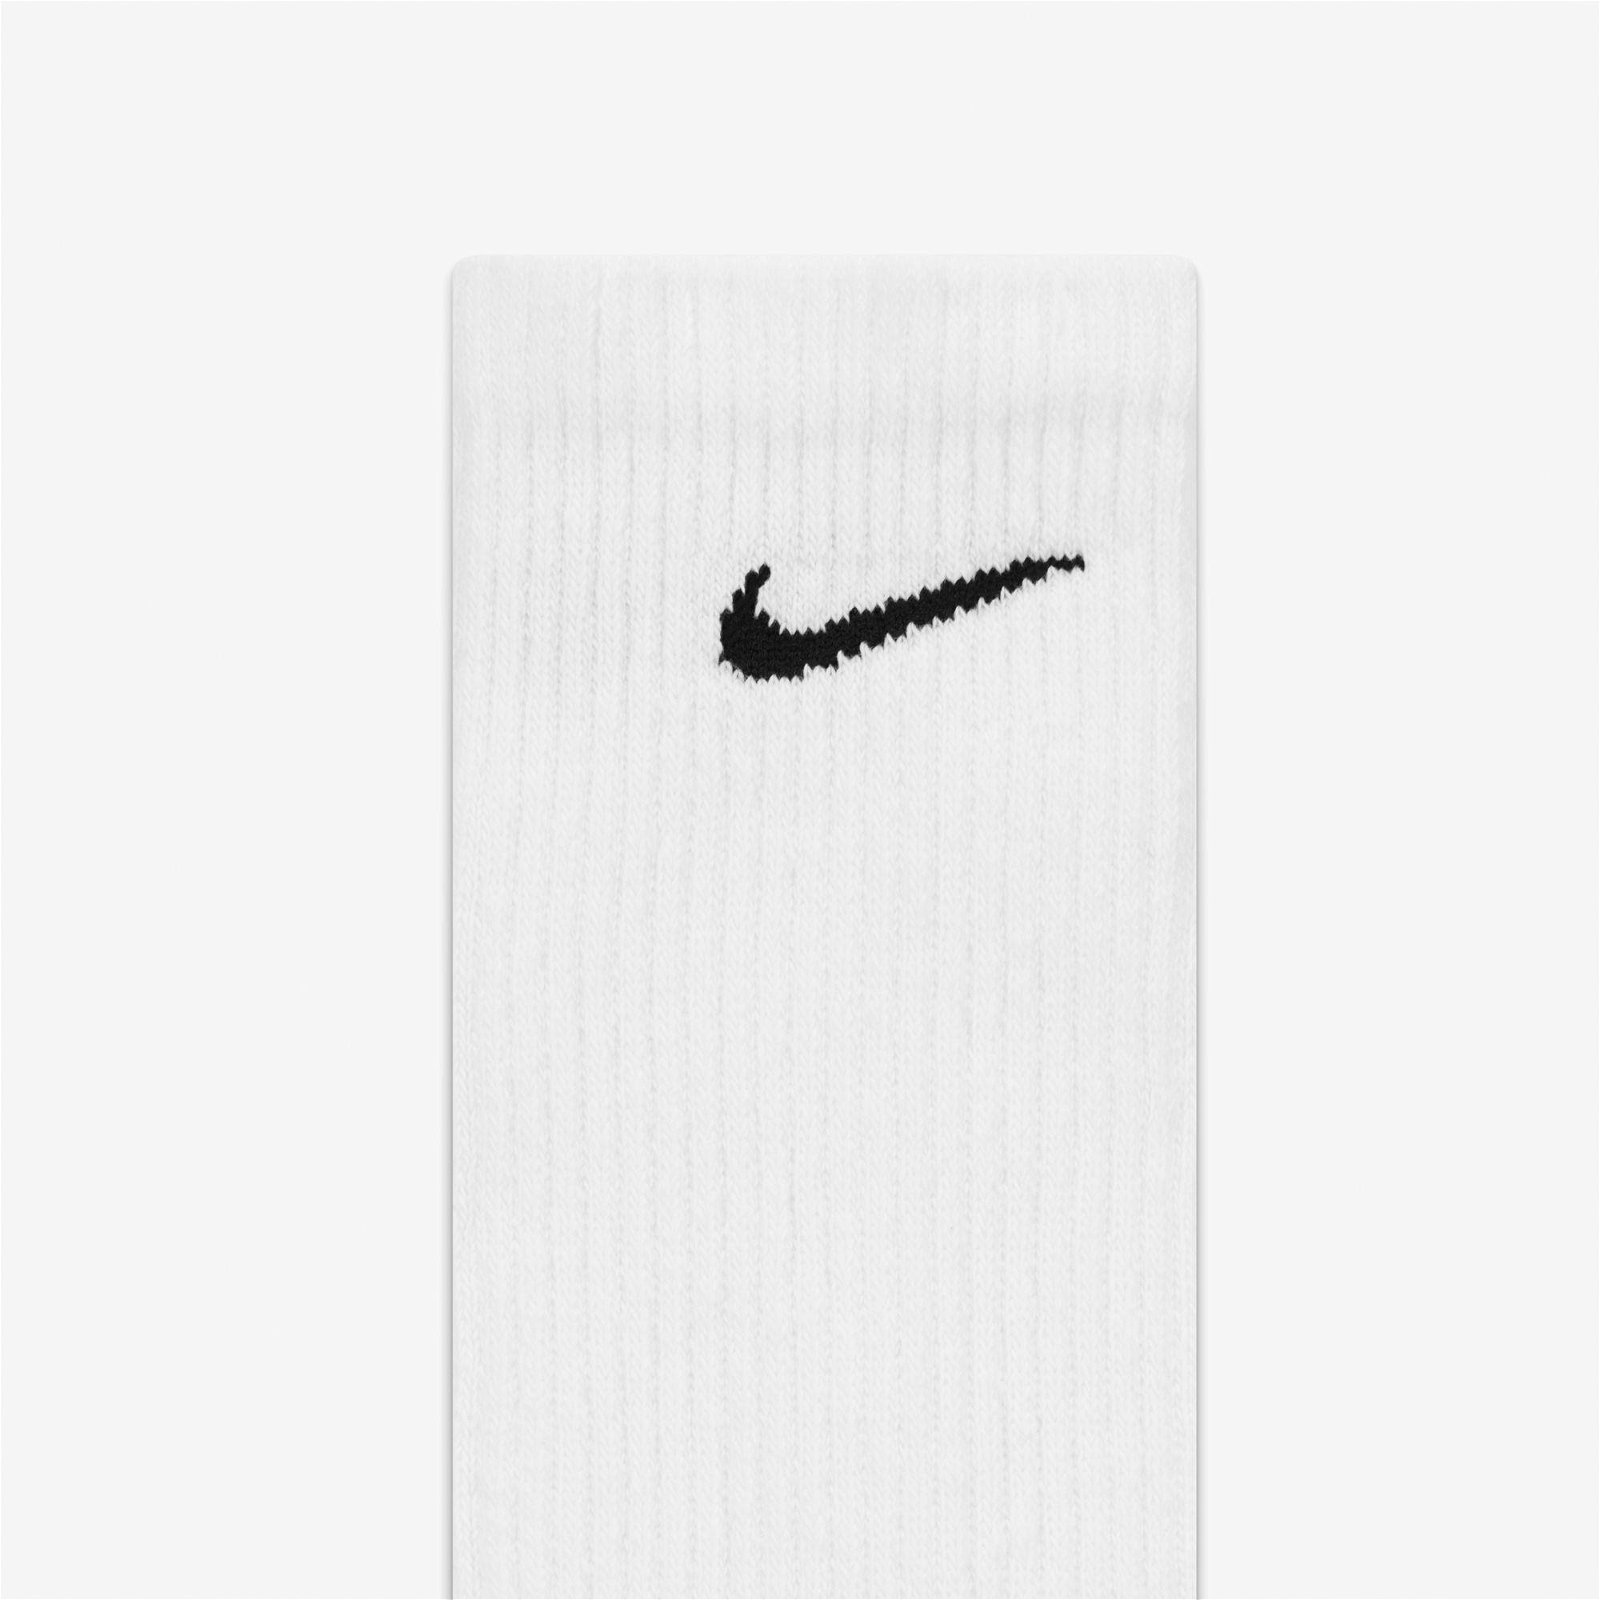 Nike Everyday Plus Cushioned Crew 6'lı Erkek Beyaz Çorap